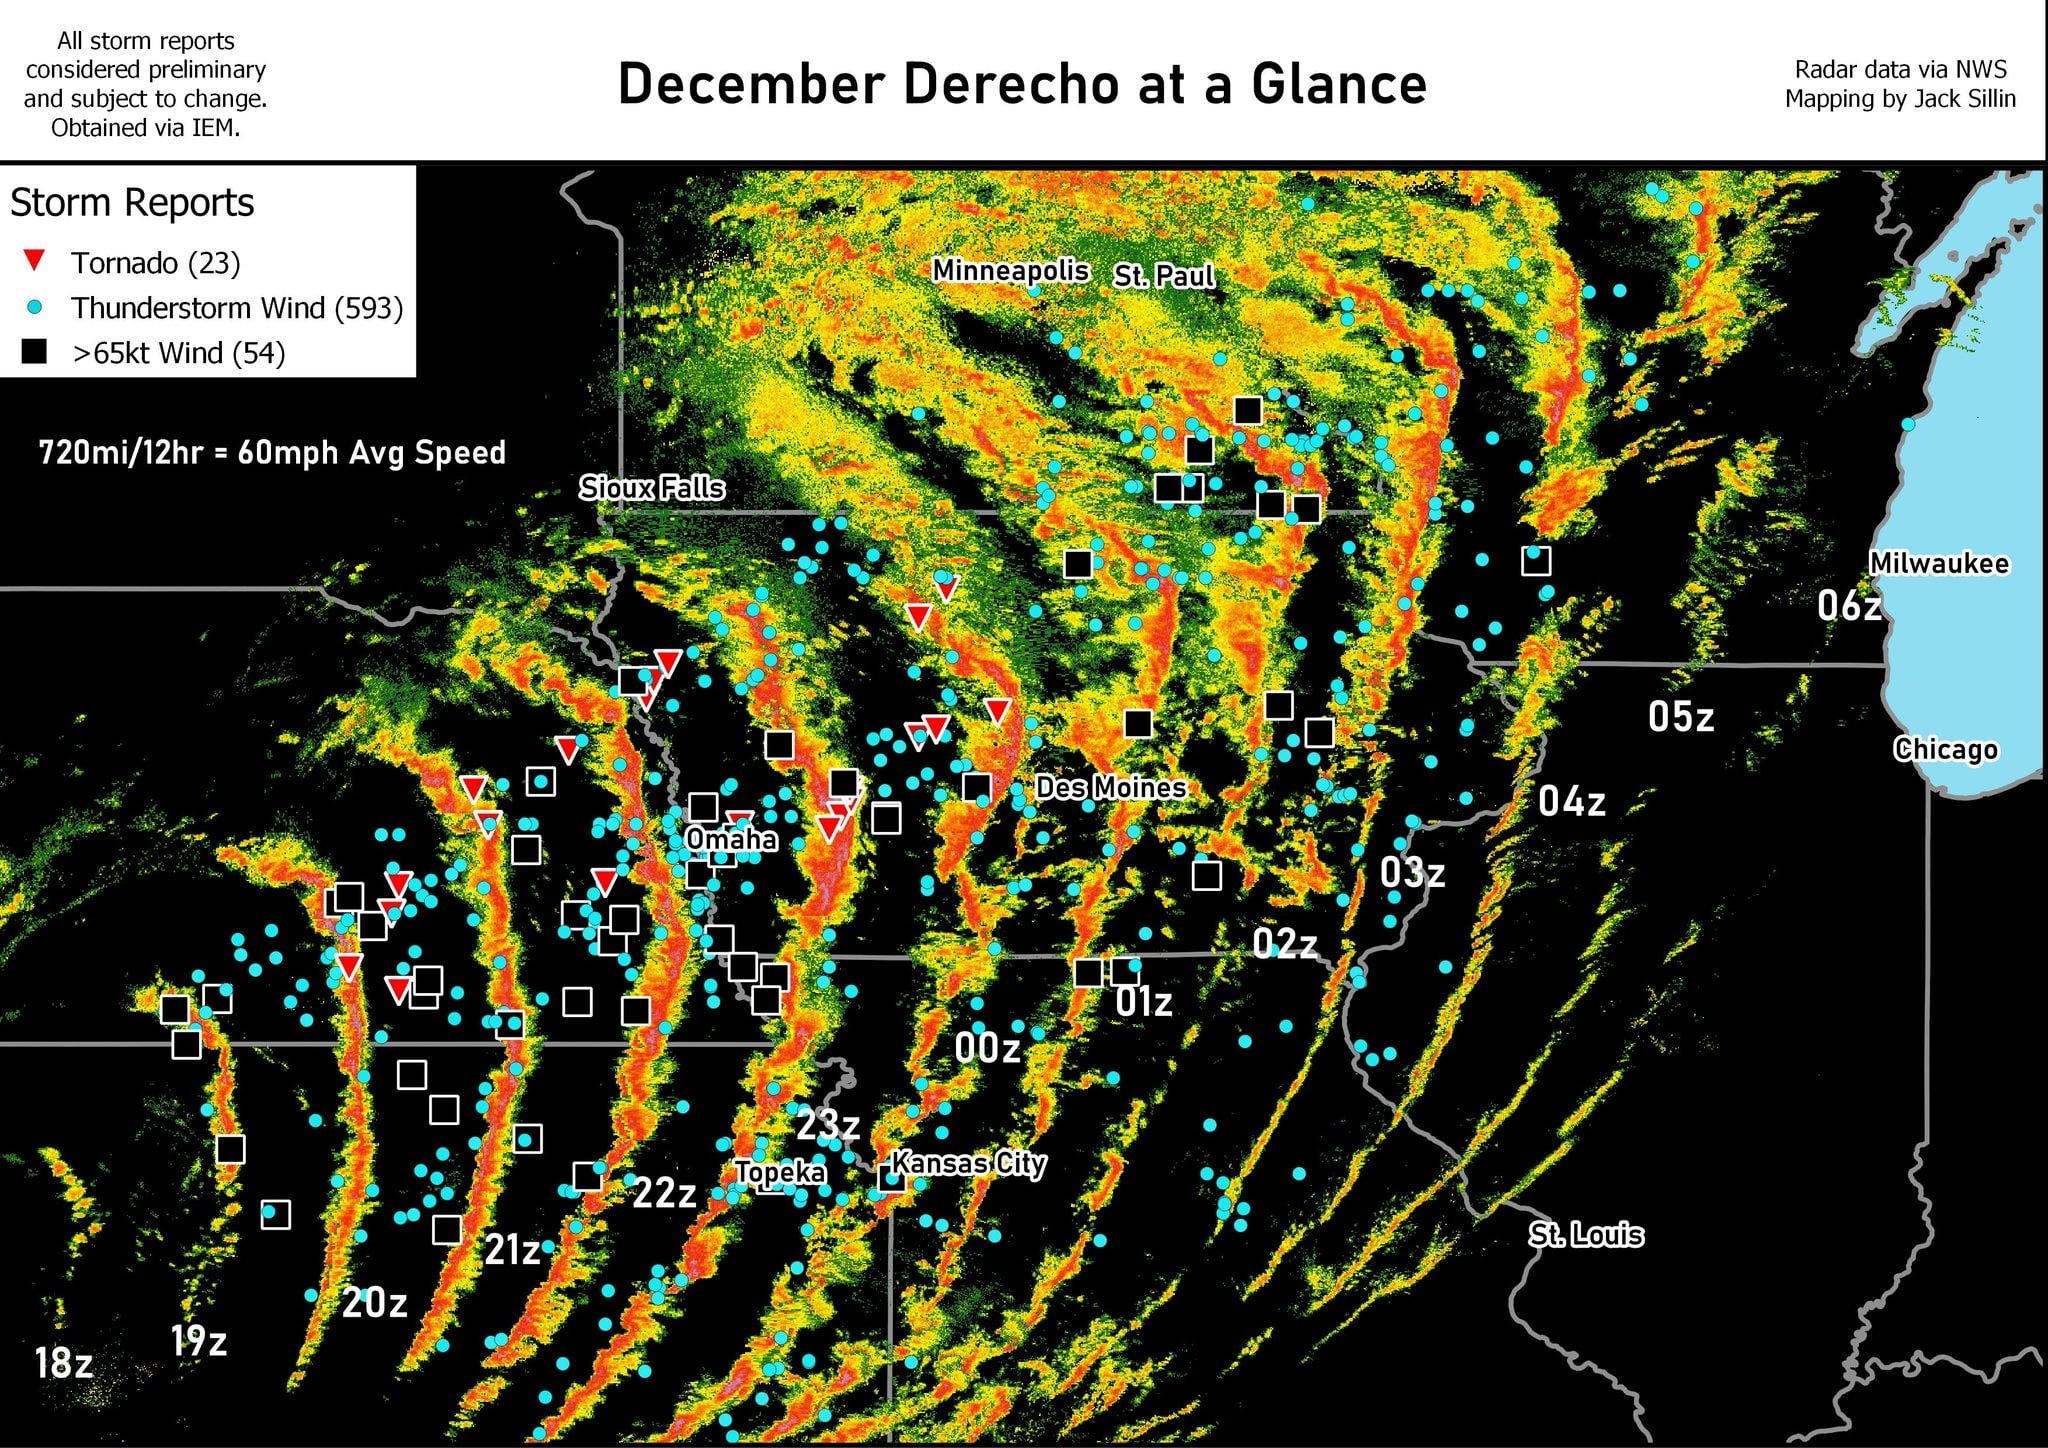 Чудовищный декабрьский шторм DERECHO убил как минимум 5 и вызвал 23 торнадо в центральной части США после вспышки торнадо в прошлые выходные